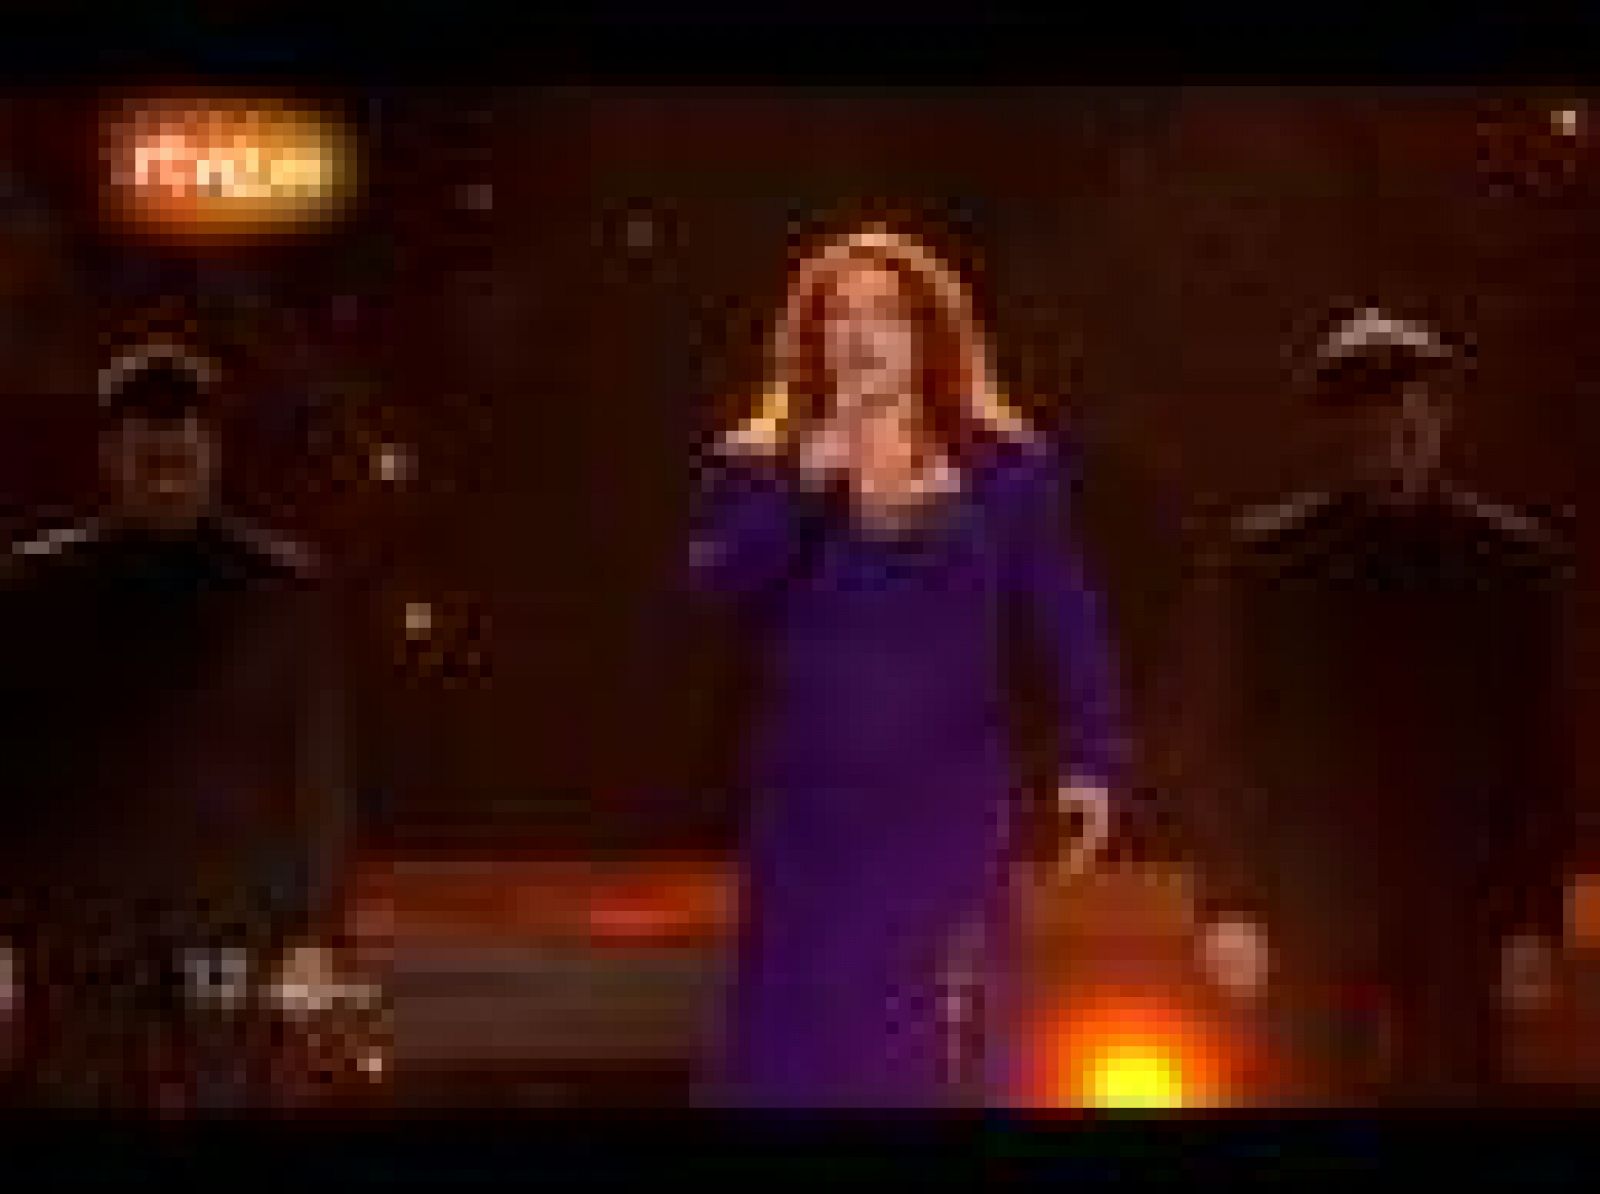  La cantante irlandesa Niamh Kavanagh consiguió con su tema "It's for you!" meterse en la final de Eurovisión.